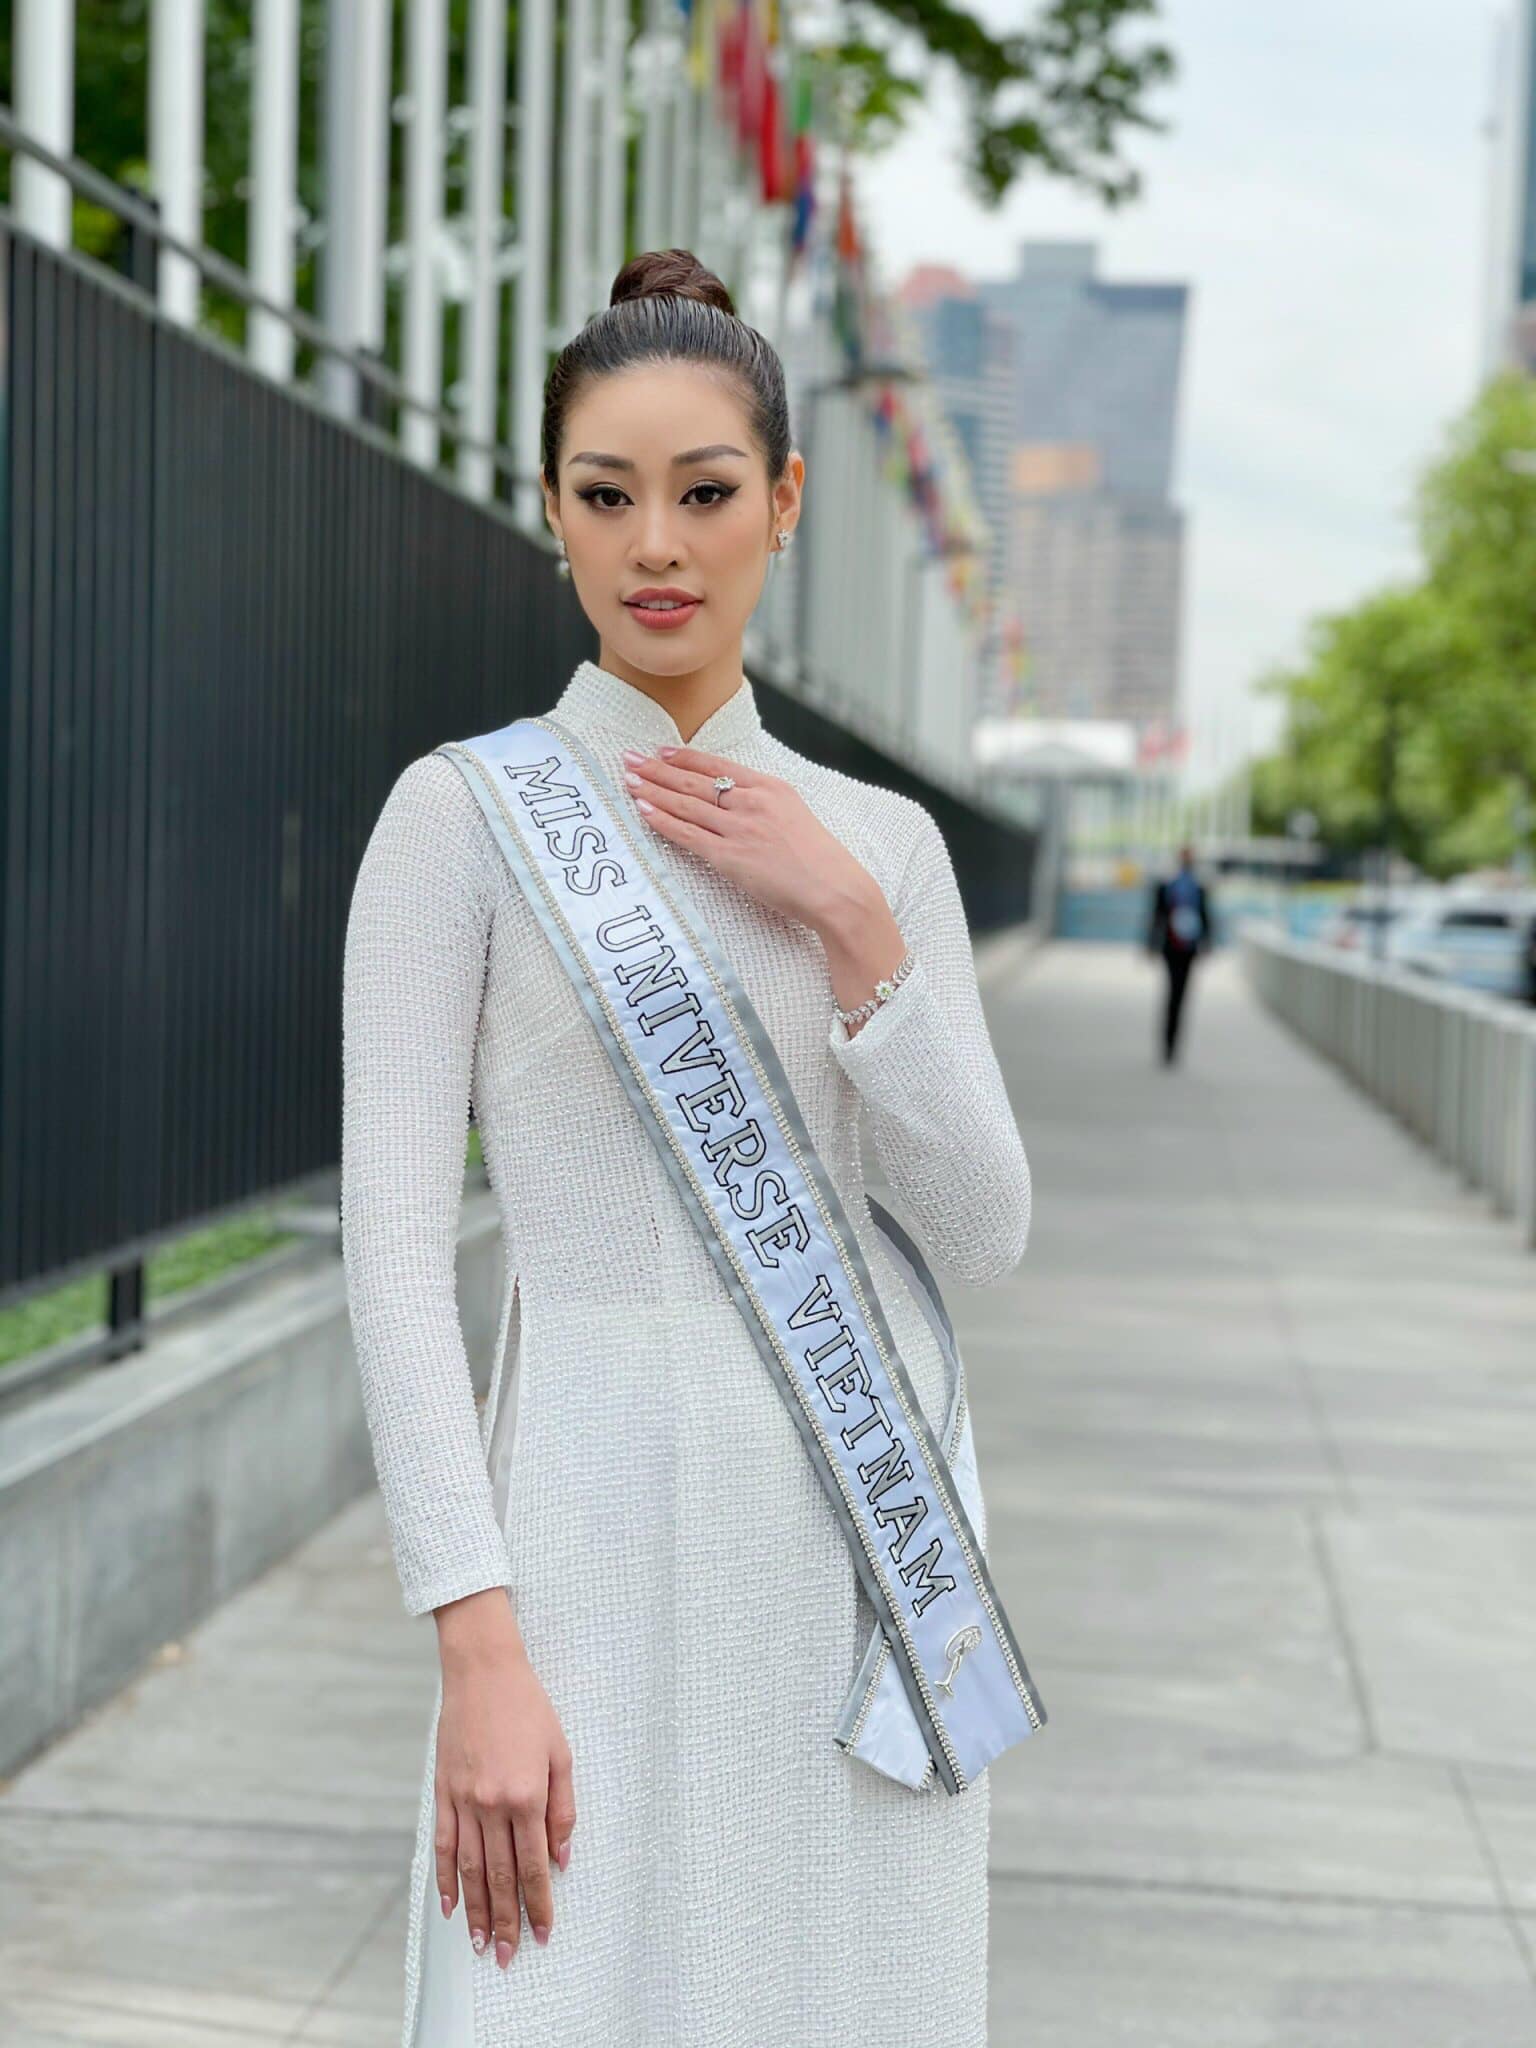 Hoa hậu Khánh Vân cuối cùng đã hoàn thành 21 ngày cách ly hậu Miss Universe 2020, tung bộ ảnh kỷ niệm mà visual ấn tượng quá - Ảnh 6.